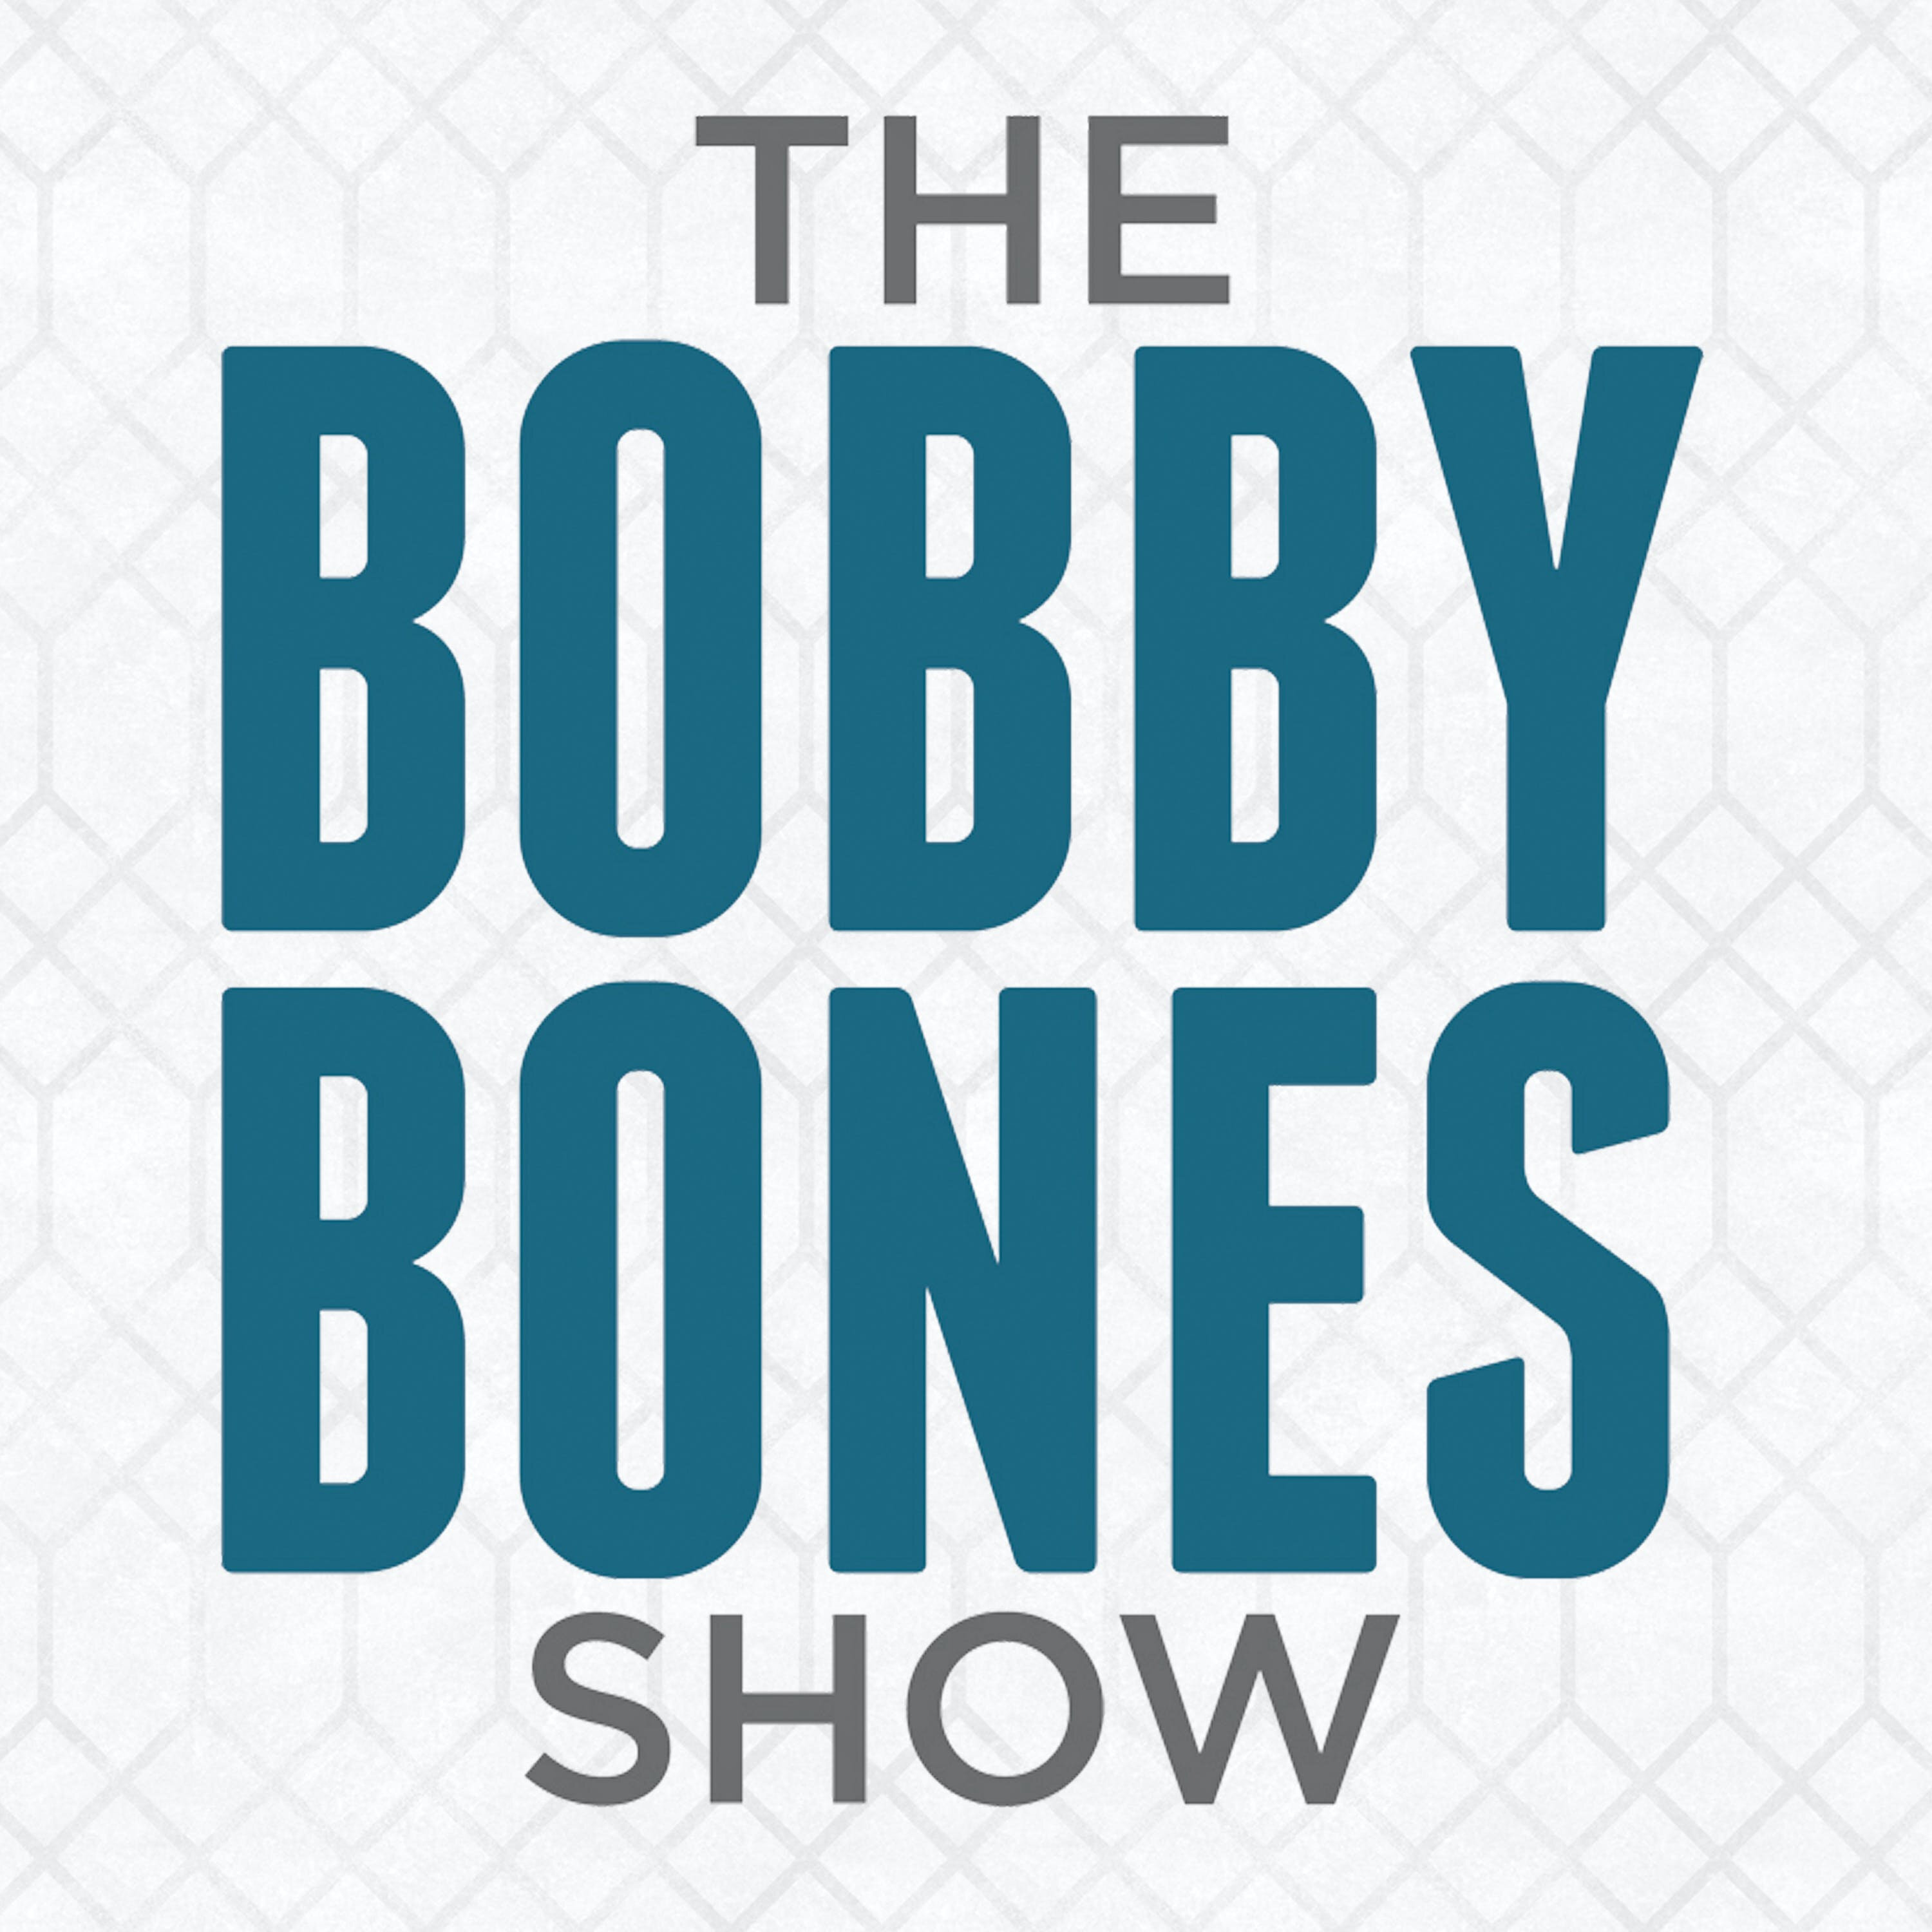 Thursday Post Show (2-22-24) | 106.1 The Bull | The Bobby Bones Show